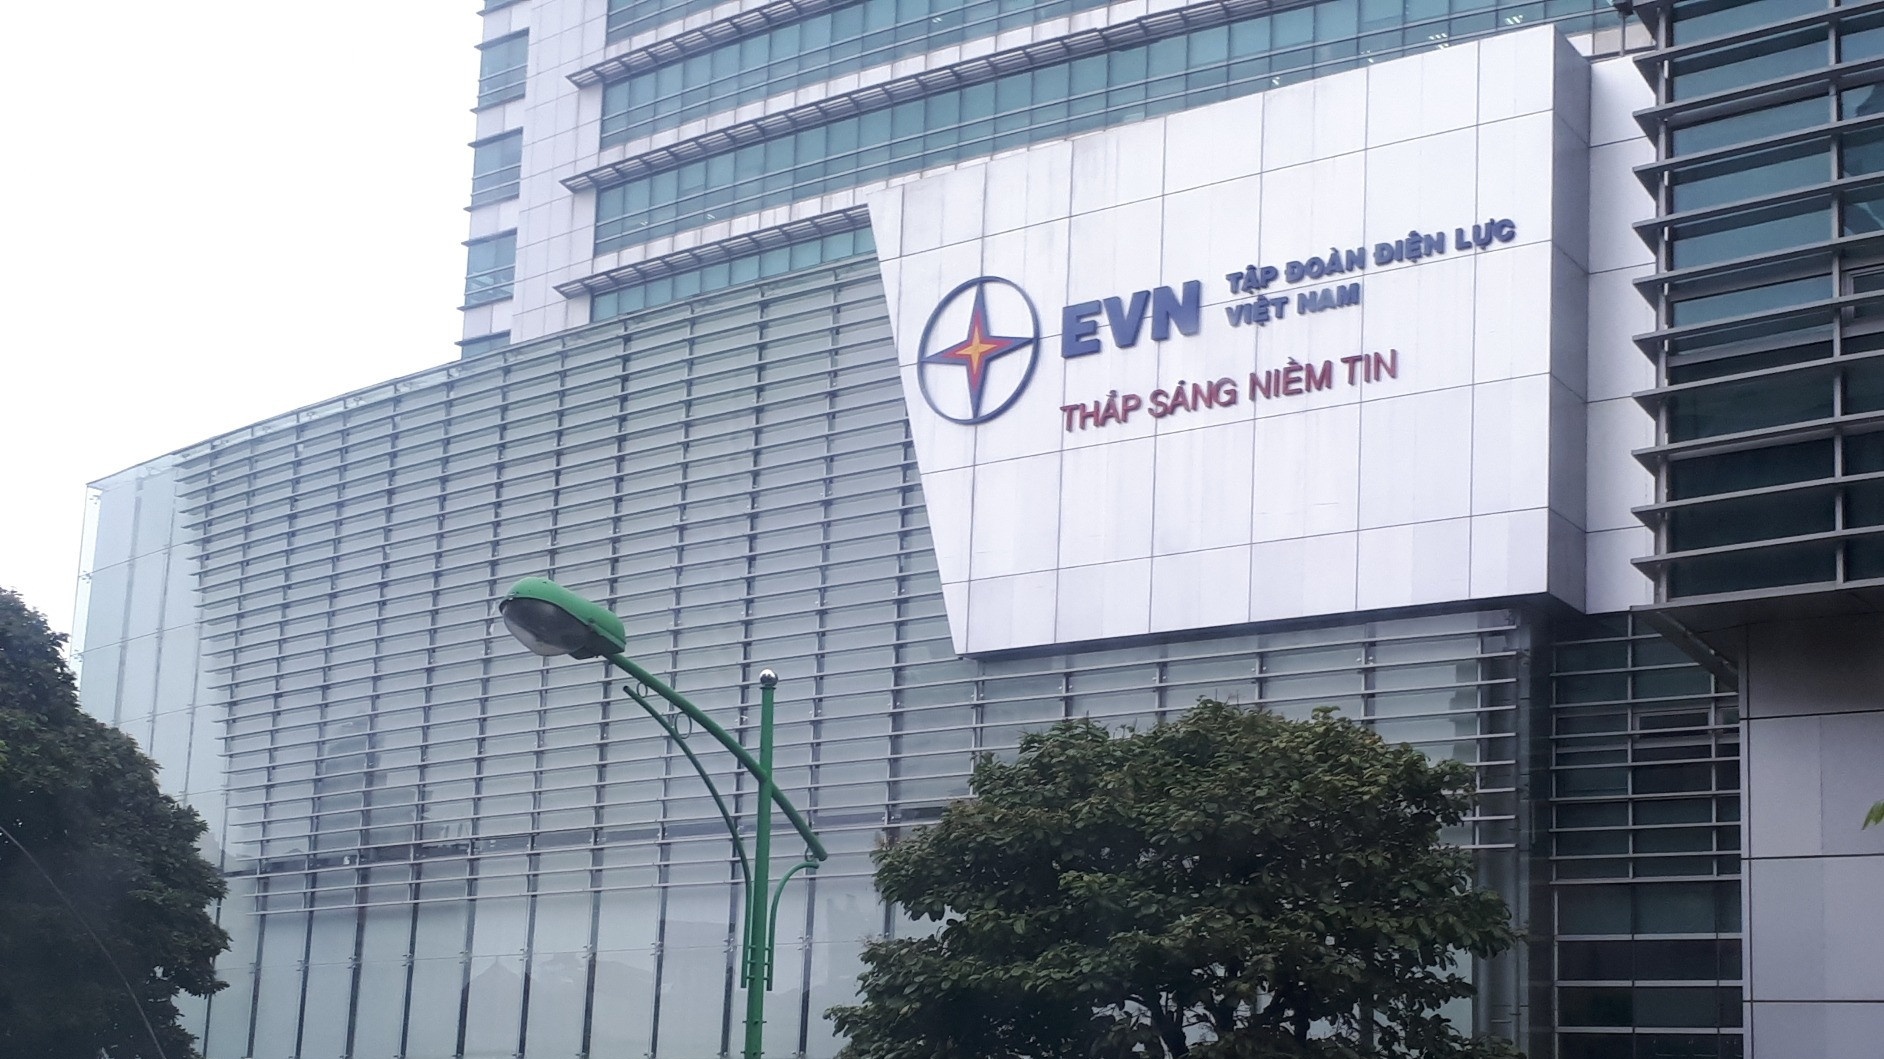 Đã có kết luận thanh tra việc cung ứng điện của EVN, sẽ công bố vào hôm nay